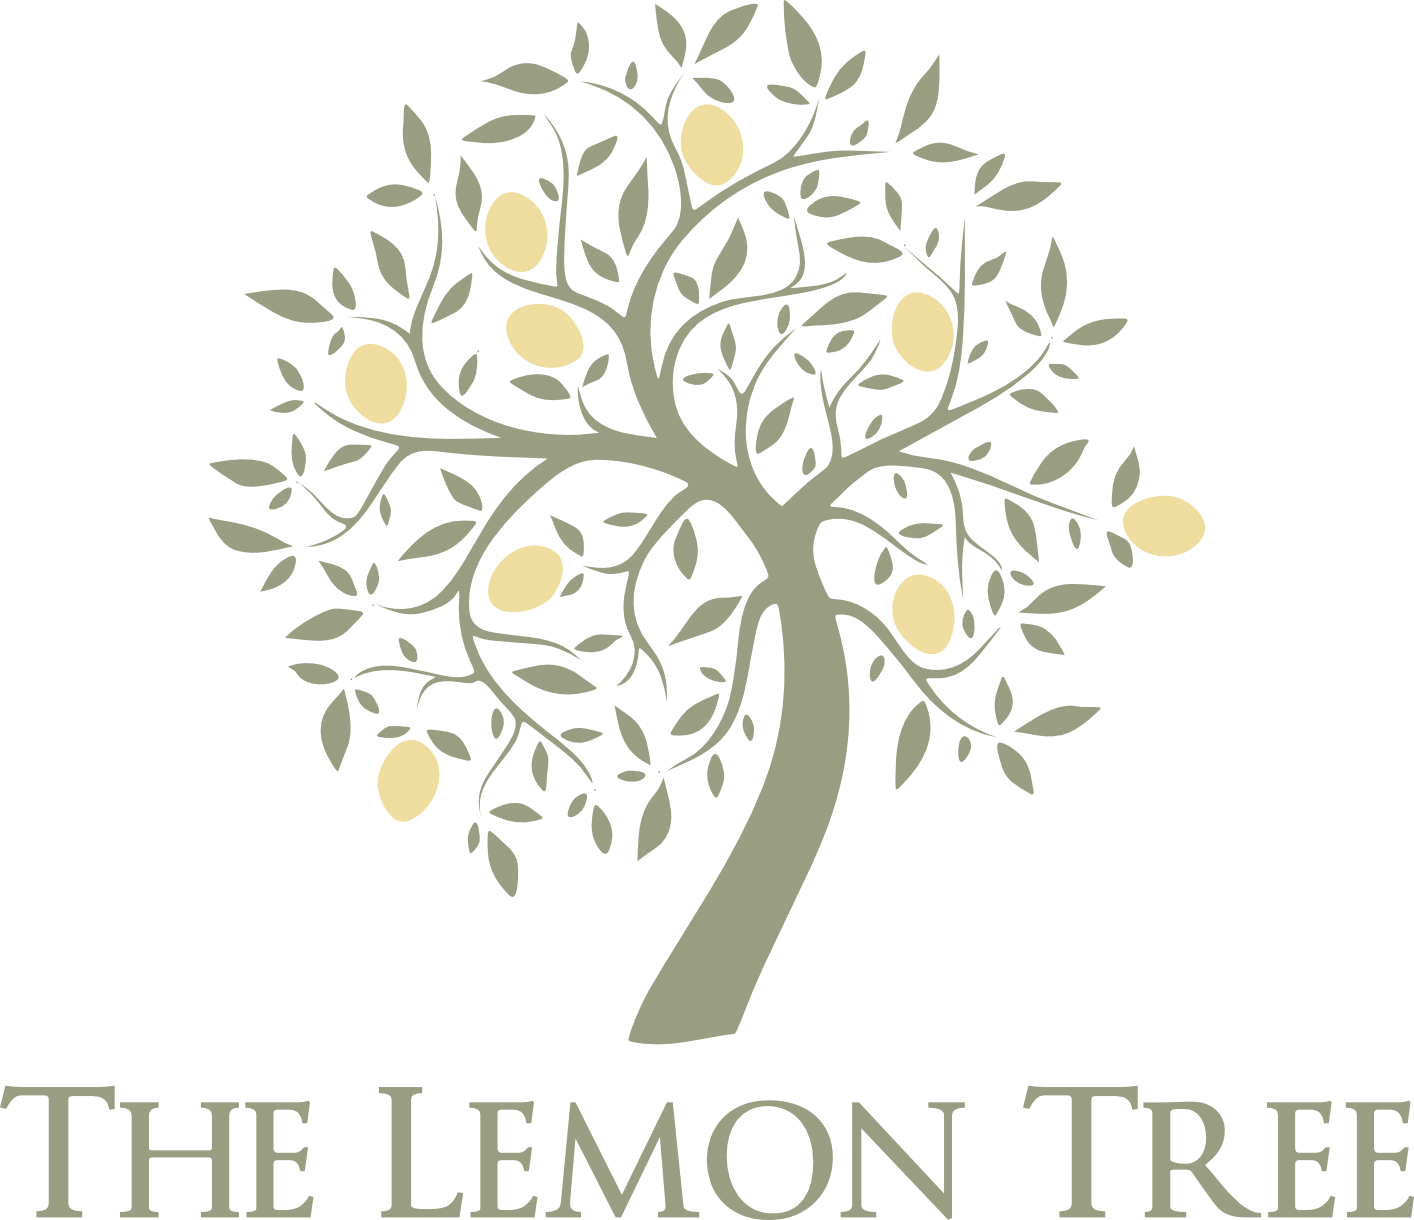 The Lemon Tree in Covent Garden